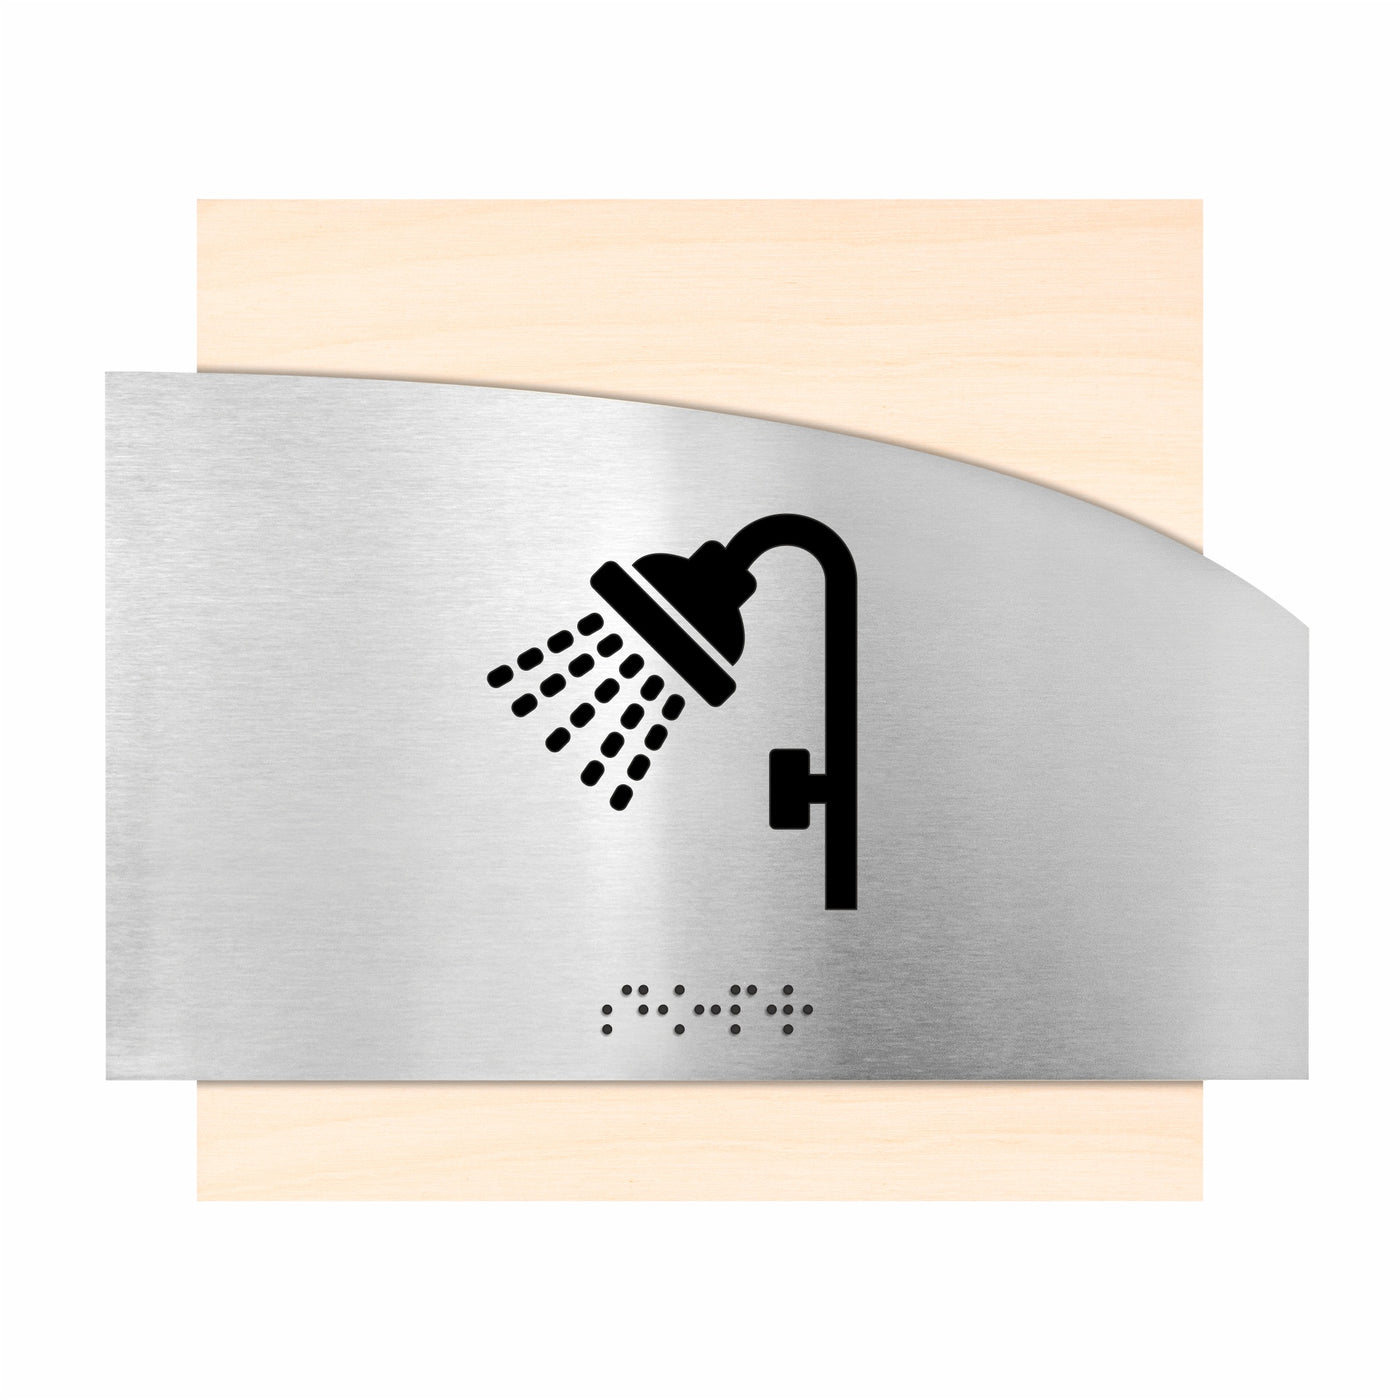 Wood & Steel Shower Sign "Wave" Design